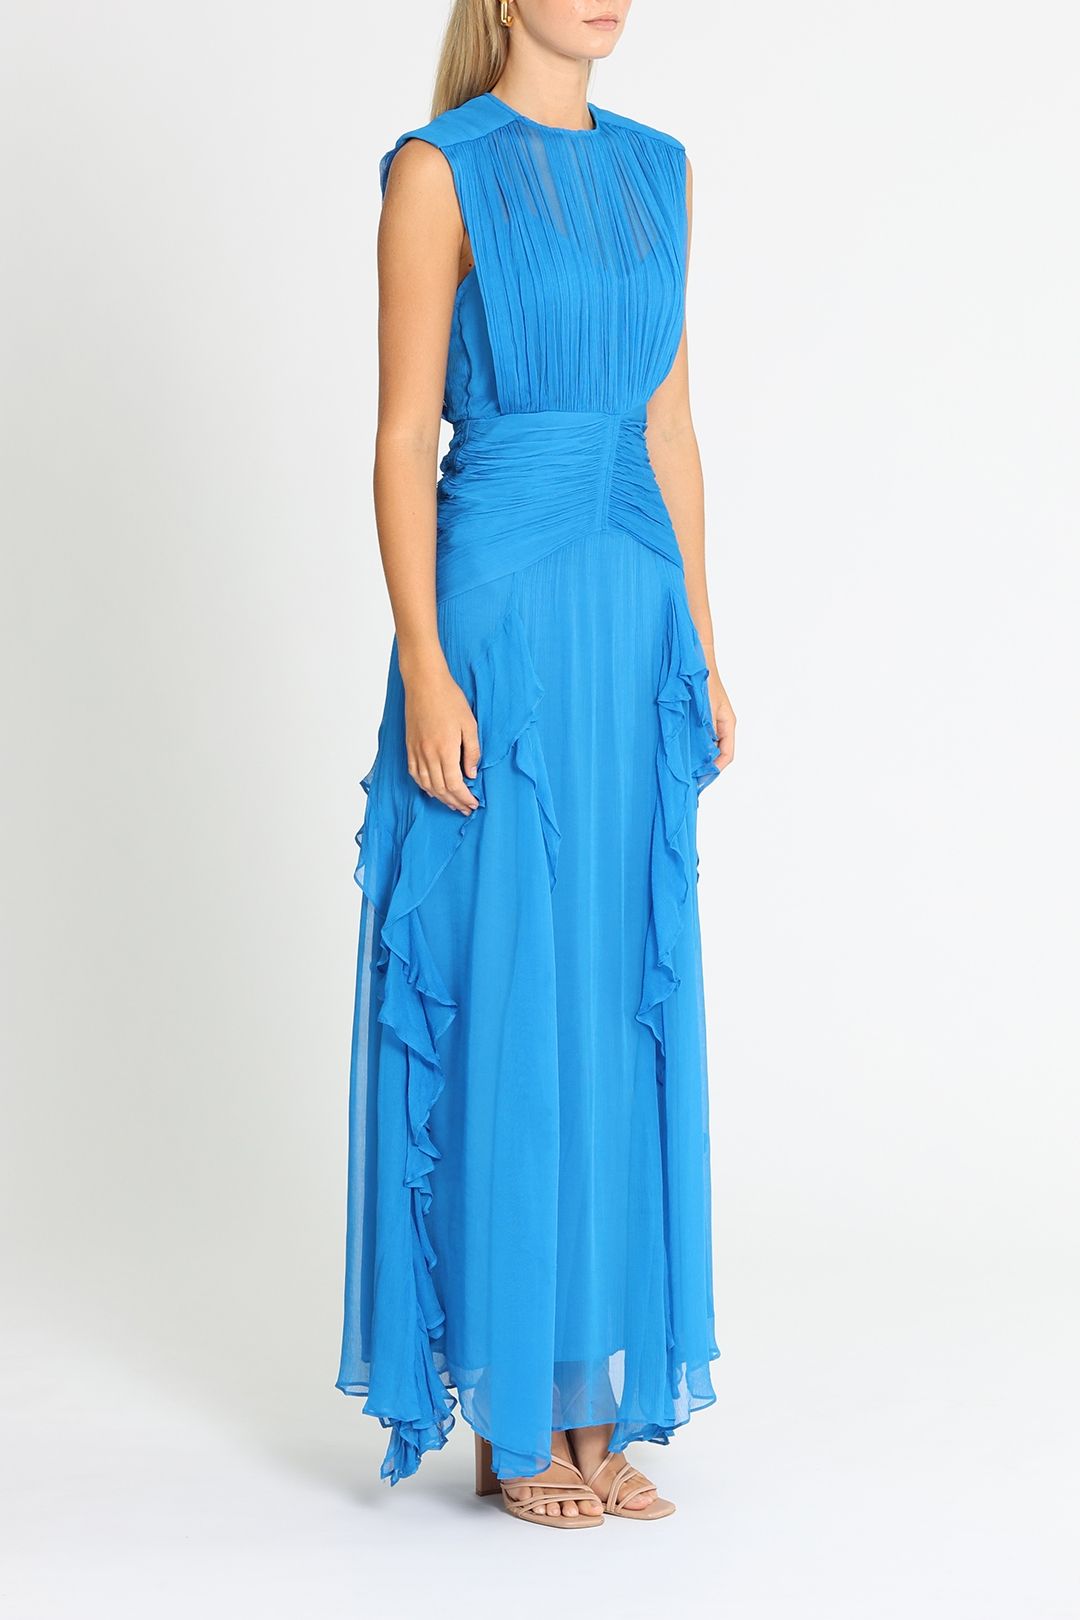 Shona Joy Leilani Sleeveless Maxi Dress Blue Frill